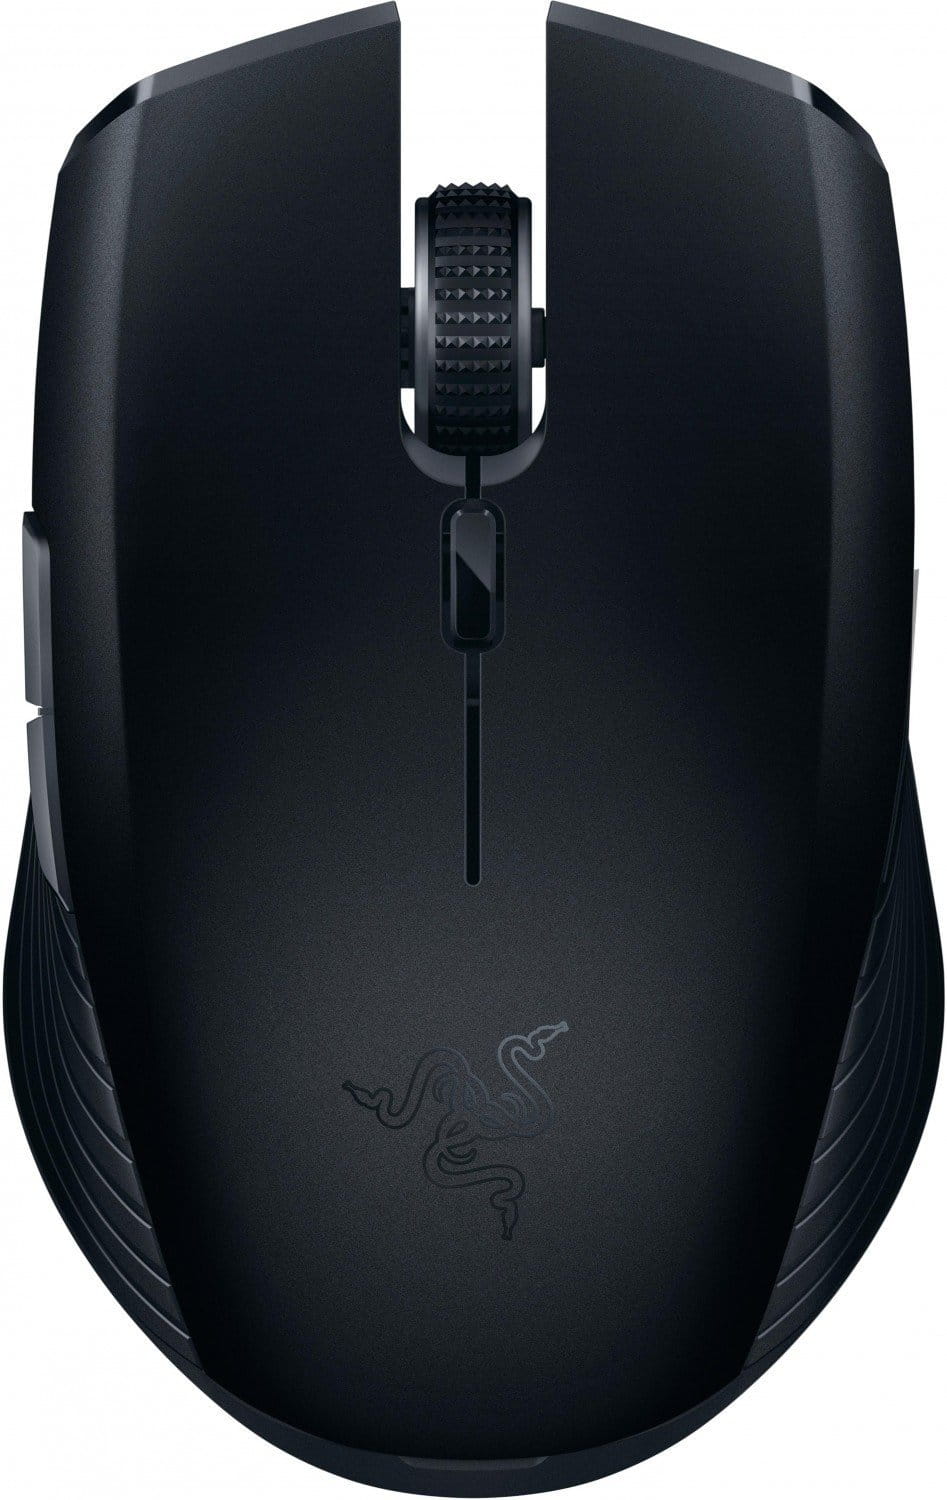 Mouse Razer Atheris / Dual 2.4GHz Wireless & Bluetooth / RZ01-02170100-R3G1 /